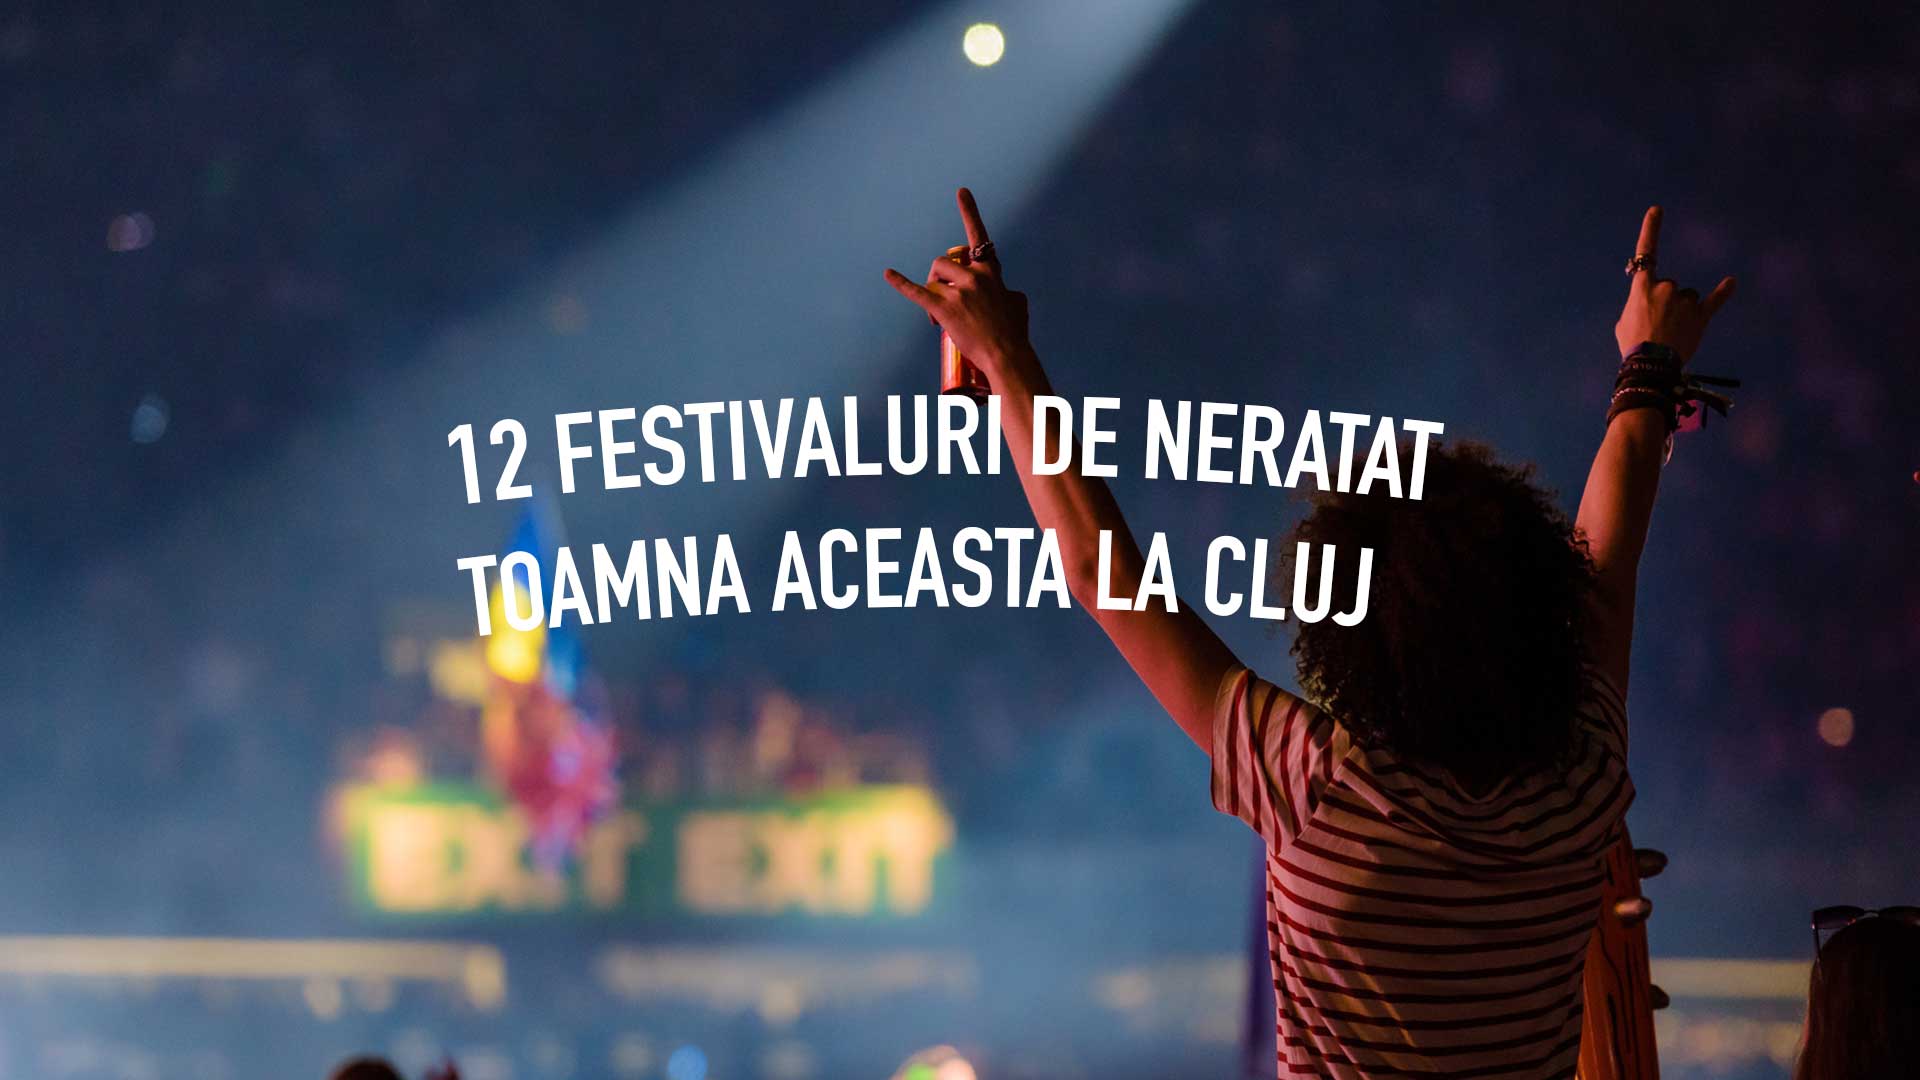 12 festivaluri de neratat toamna aceasta la Cluj